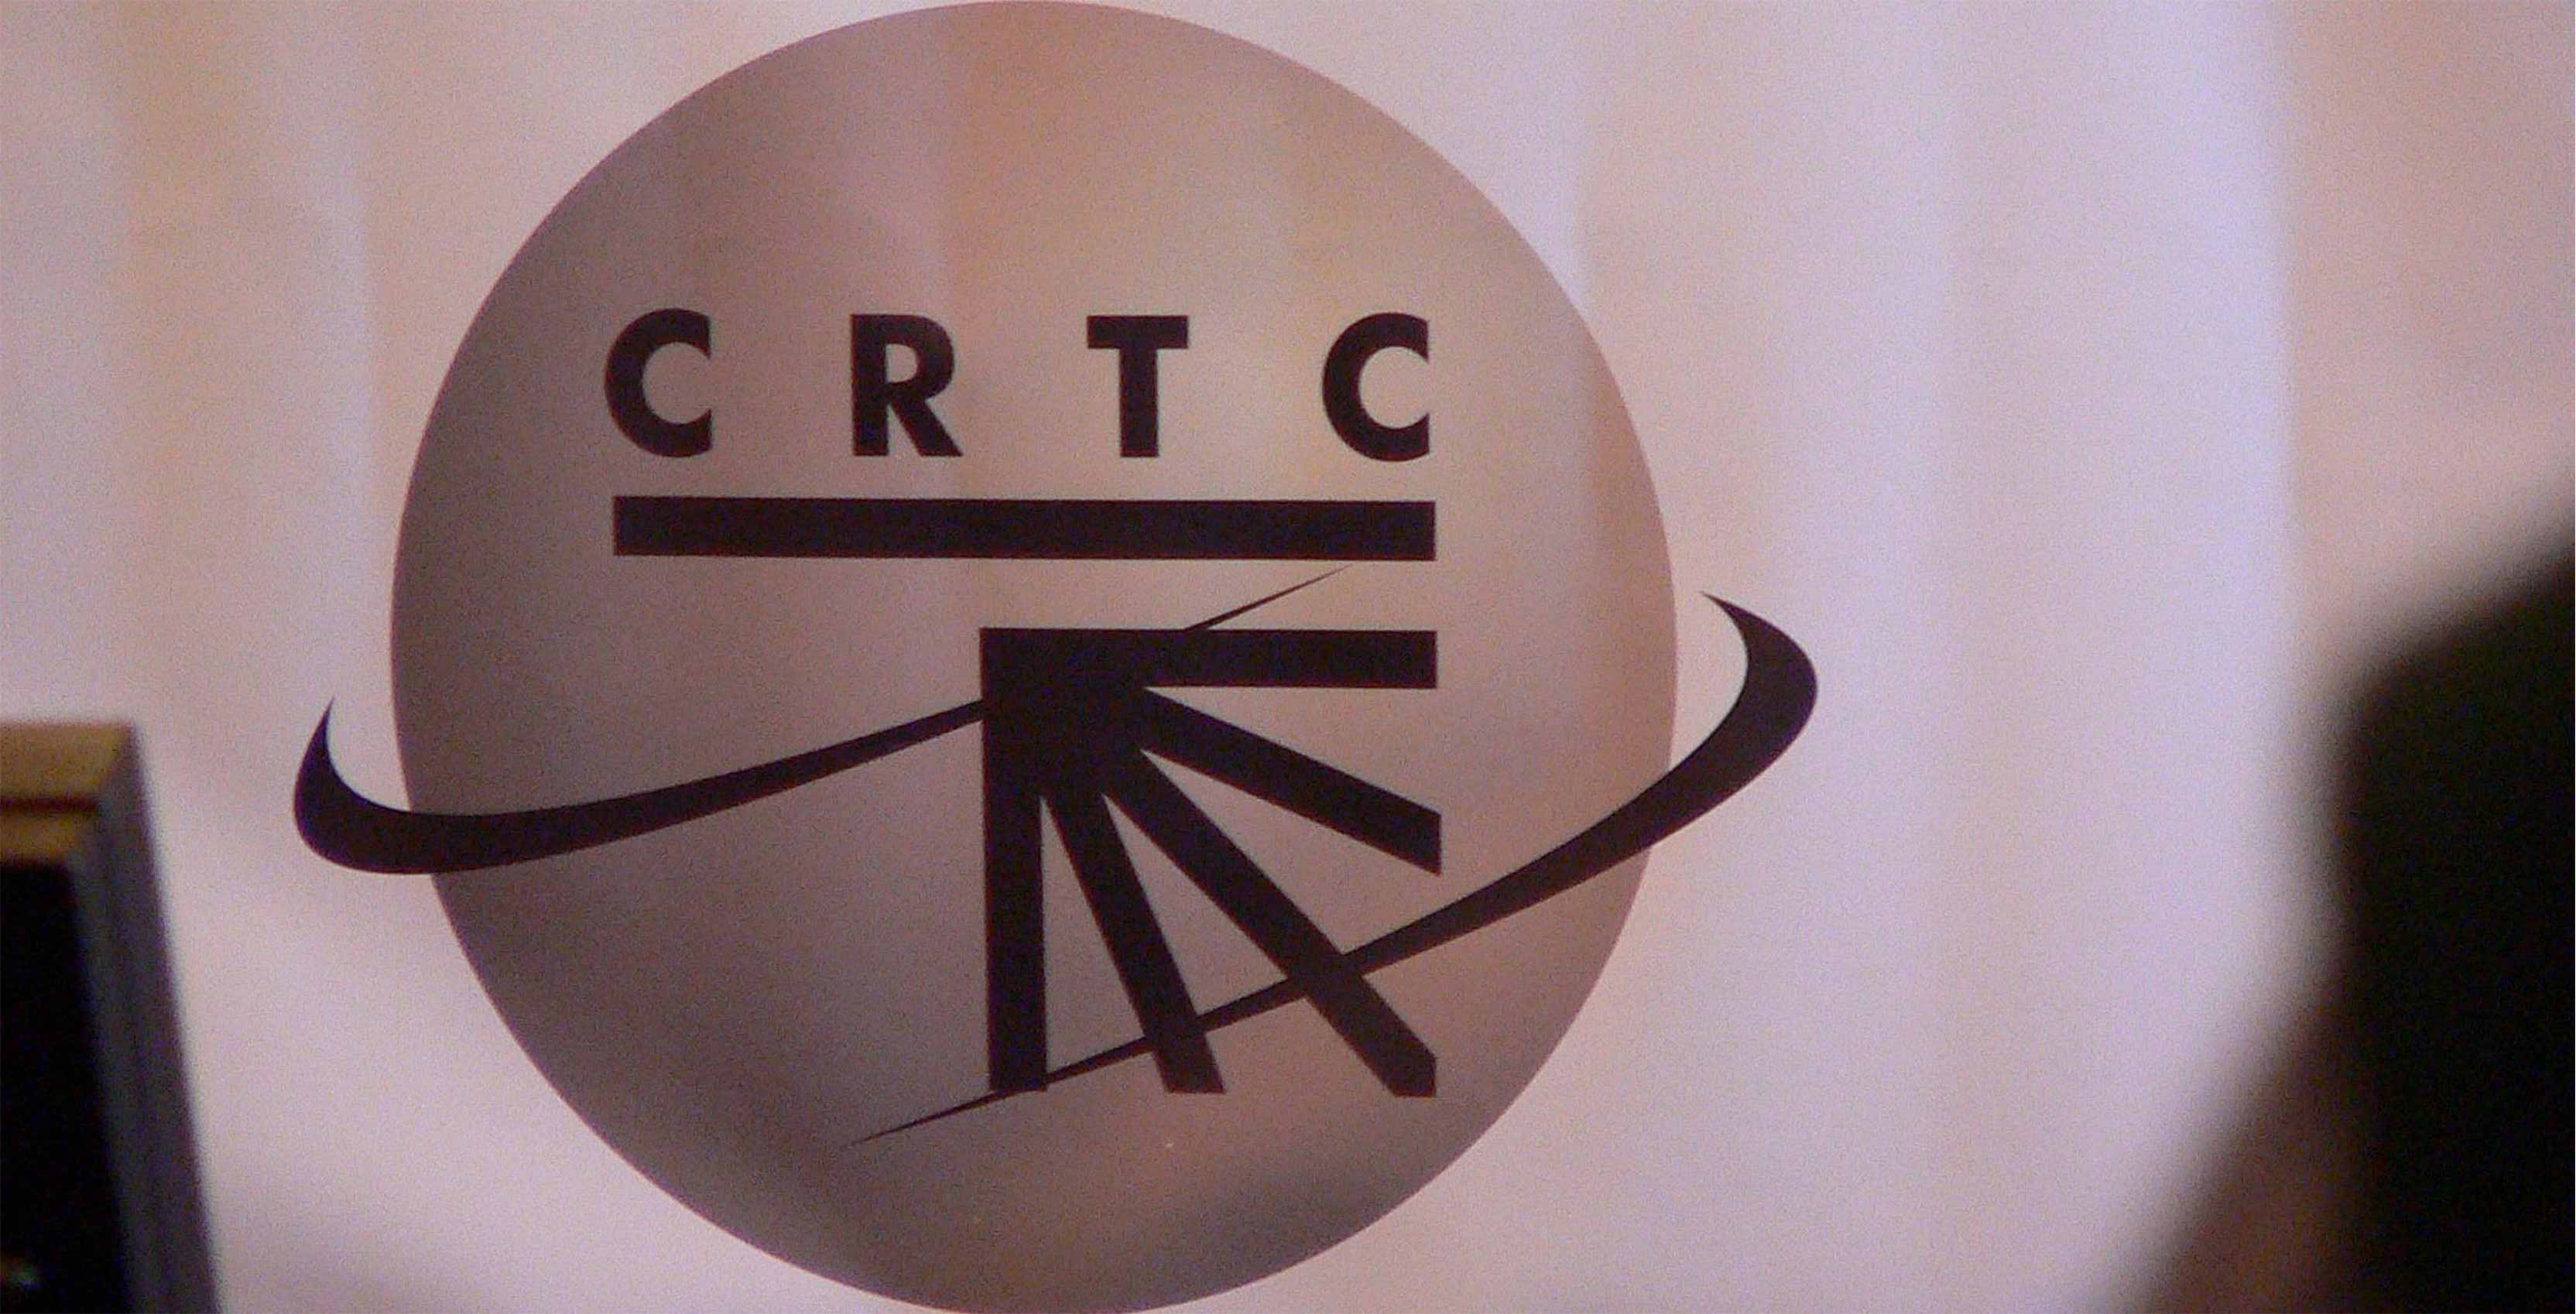 CRTC sign